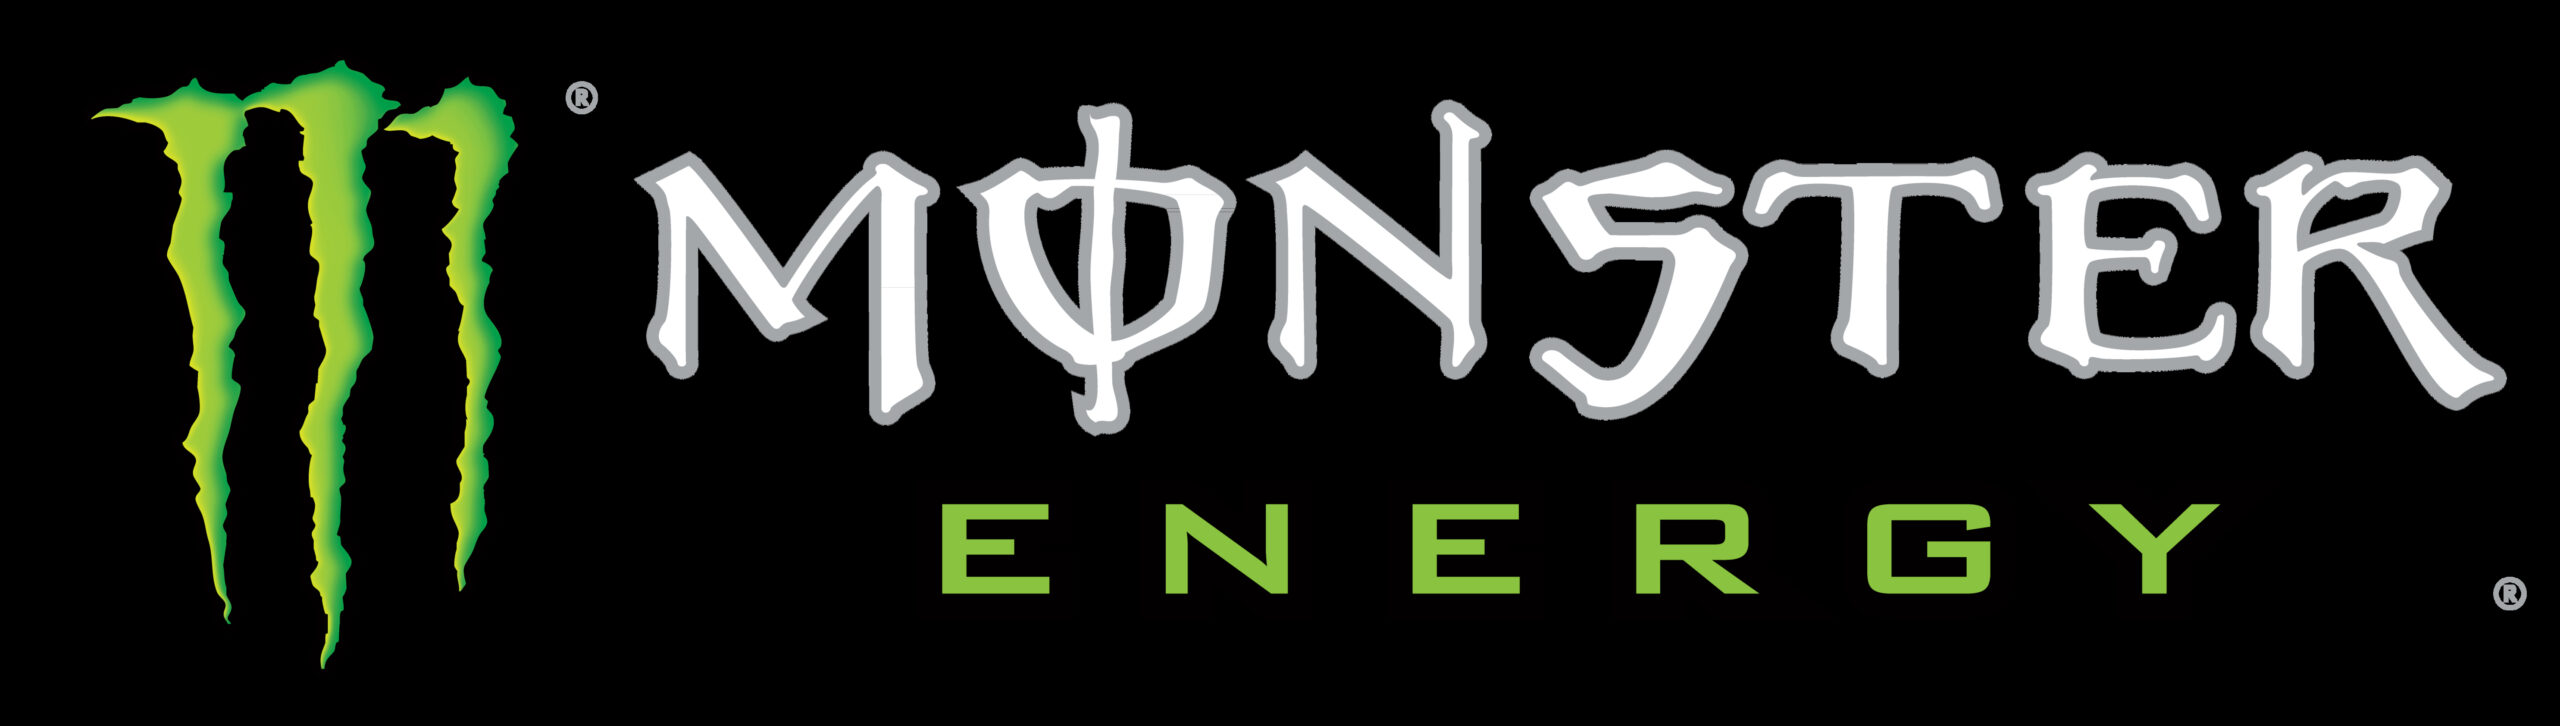 Monster_Energy_logo_black